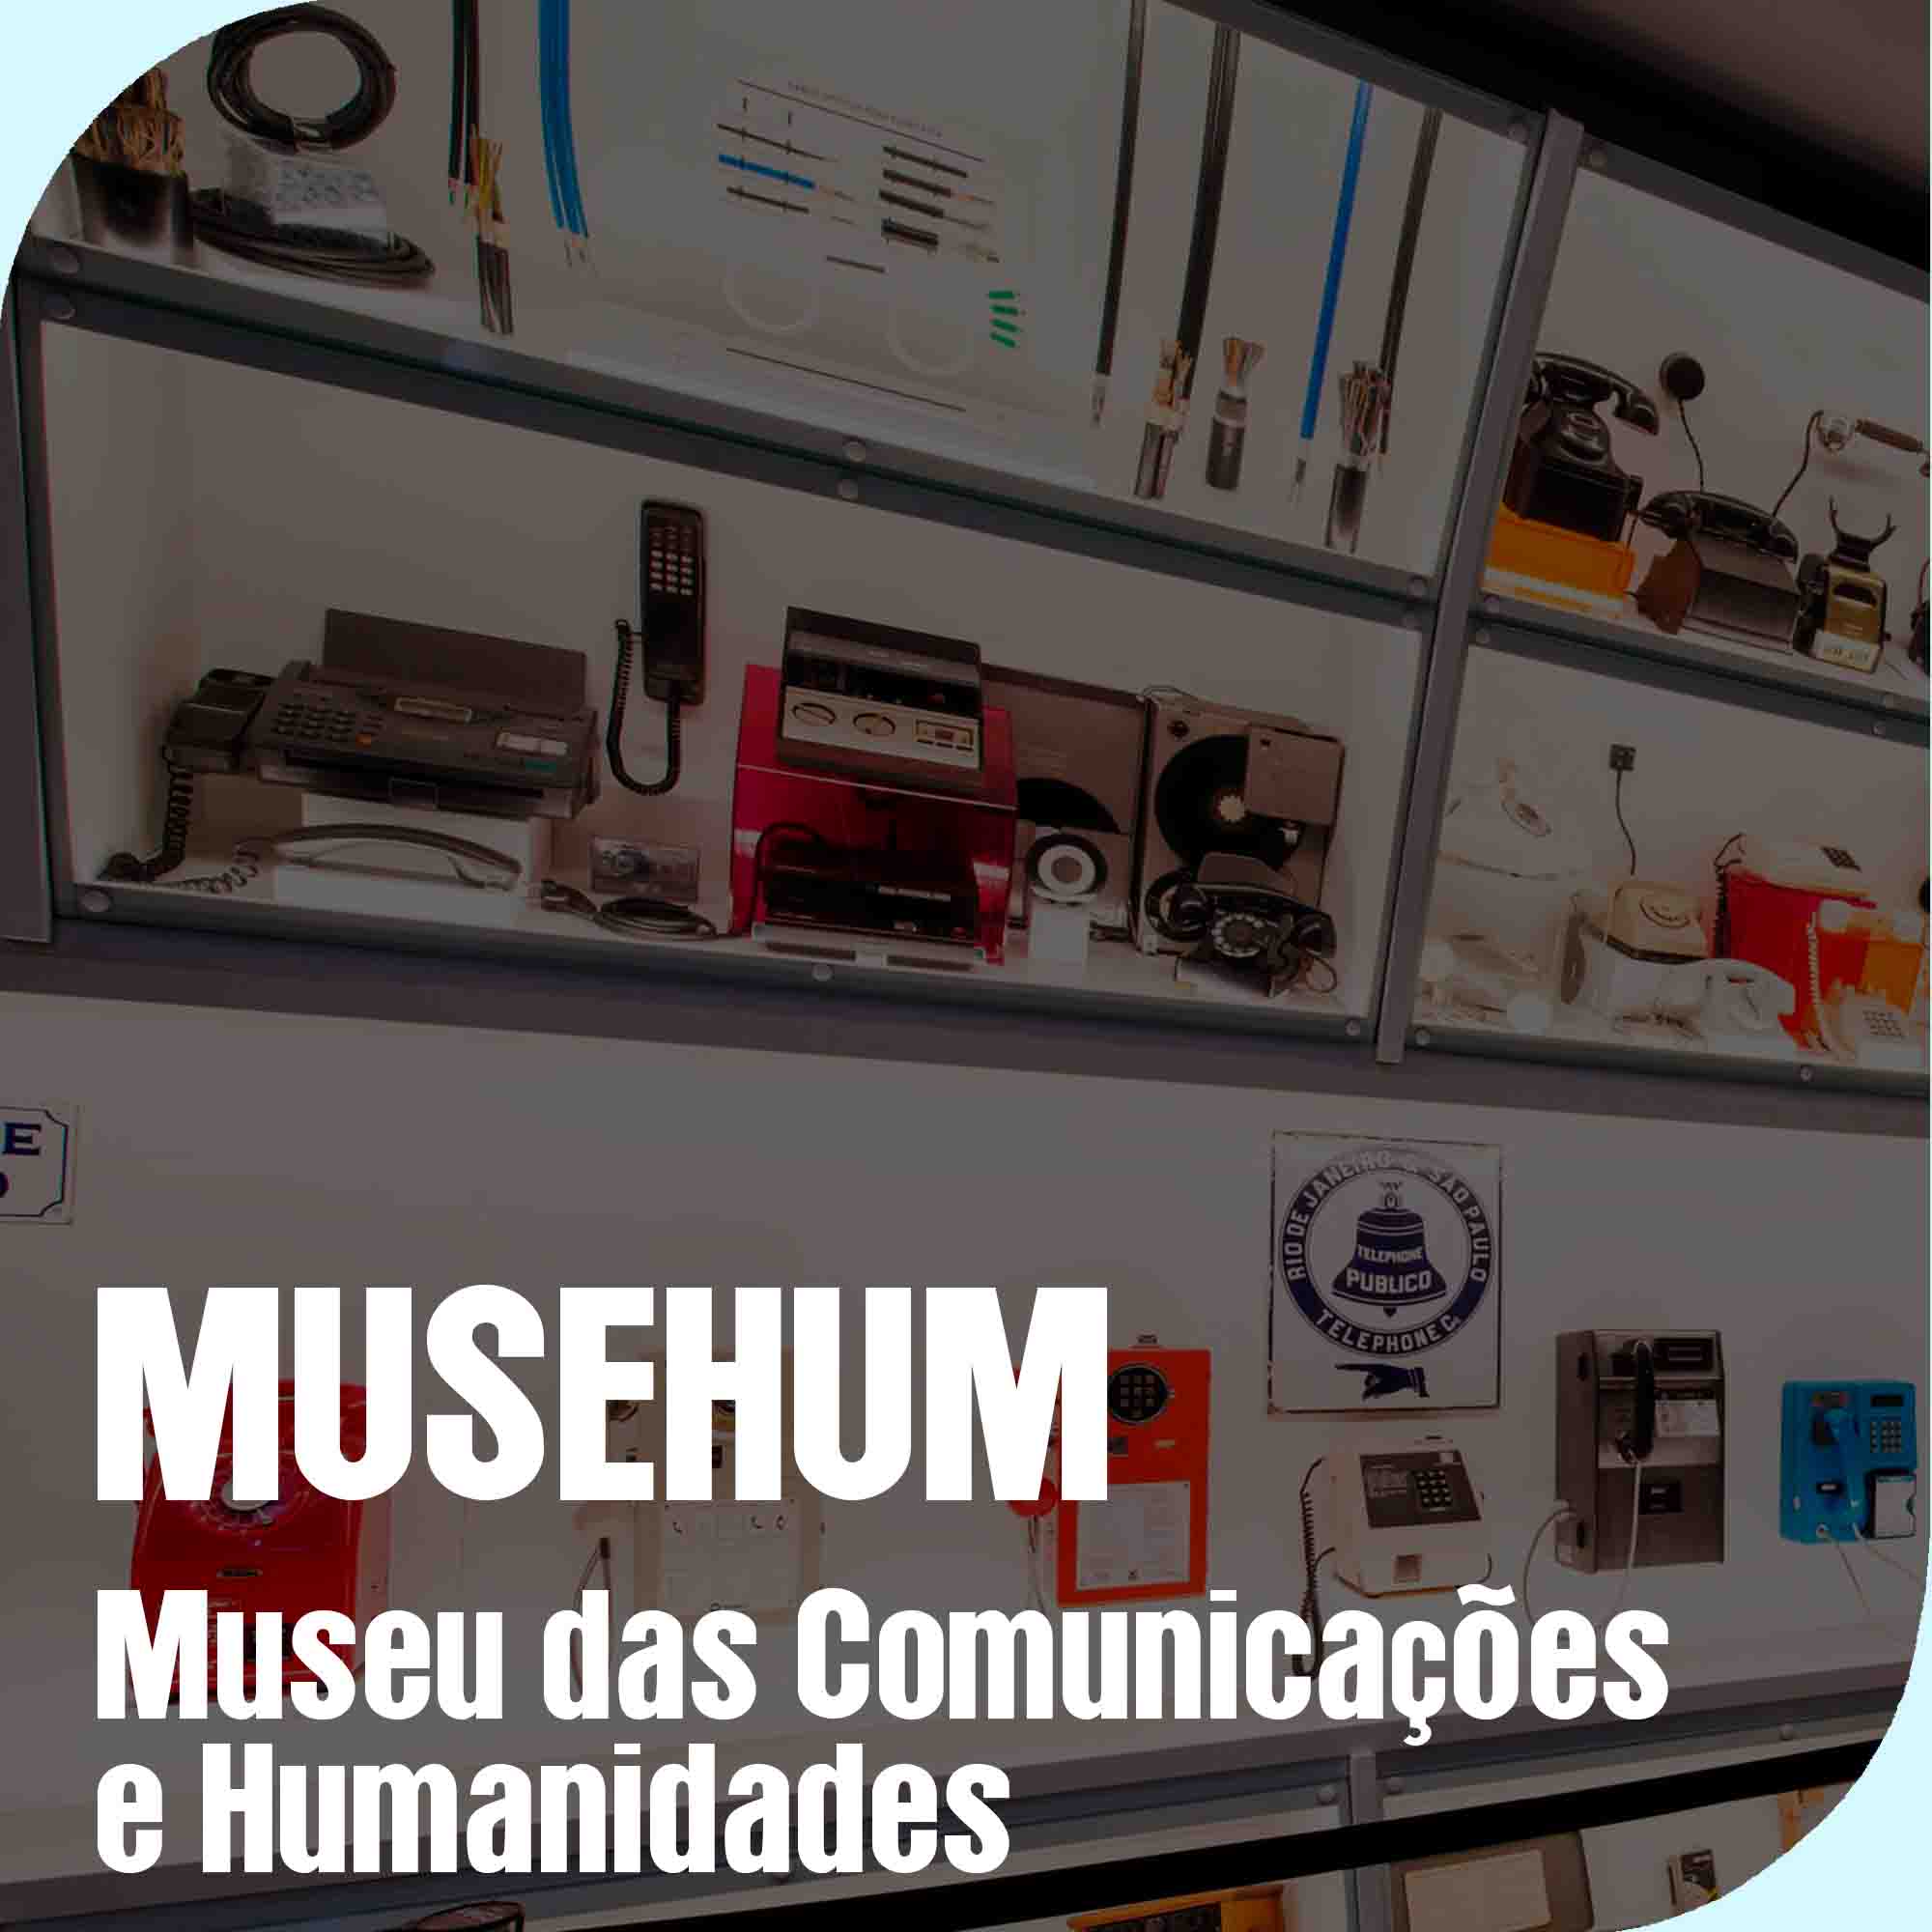 MUSEHUM - Museu das Comunicações e Humanidades